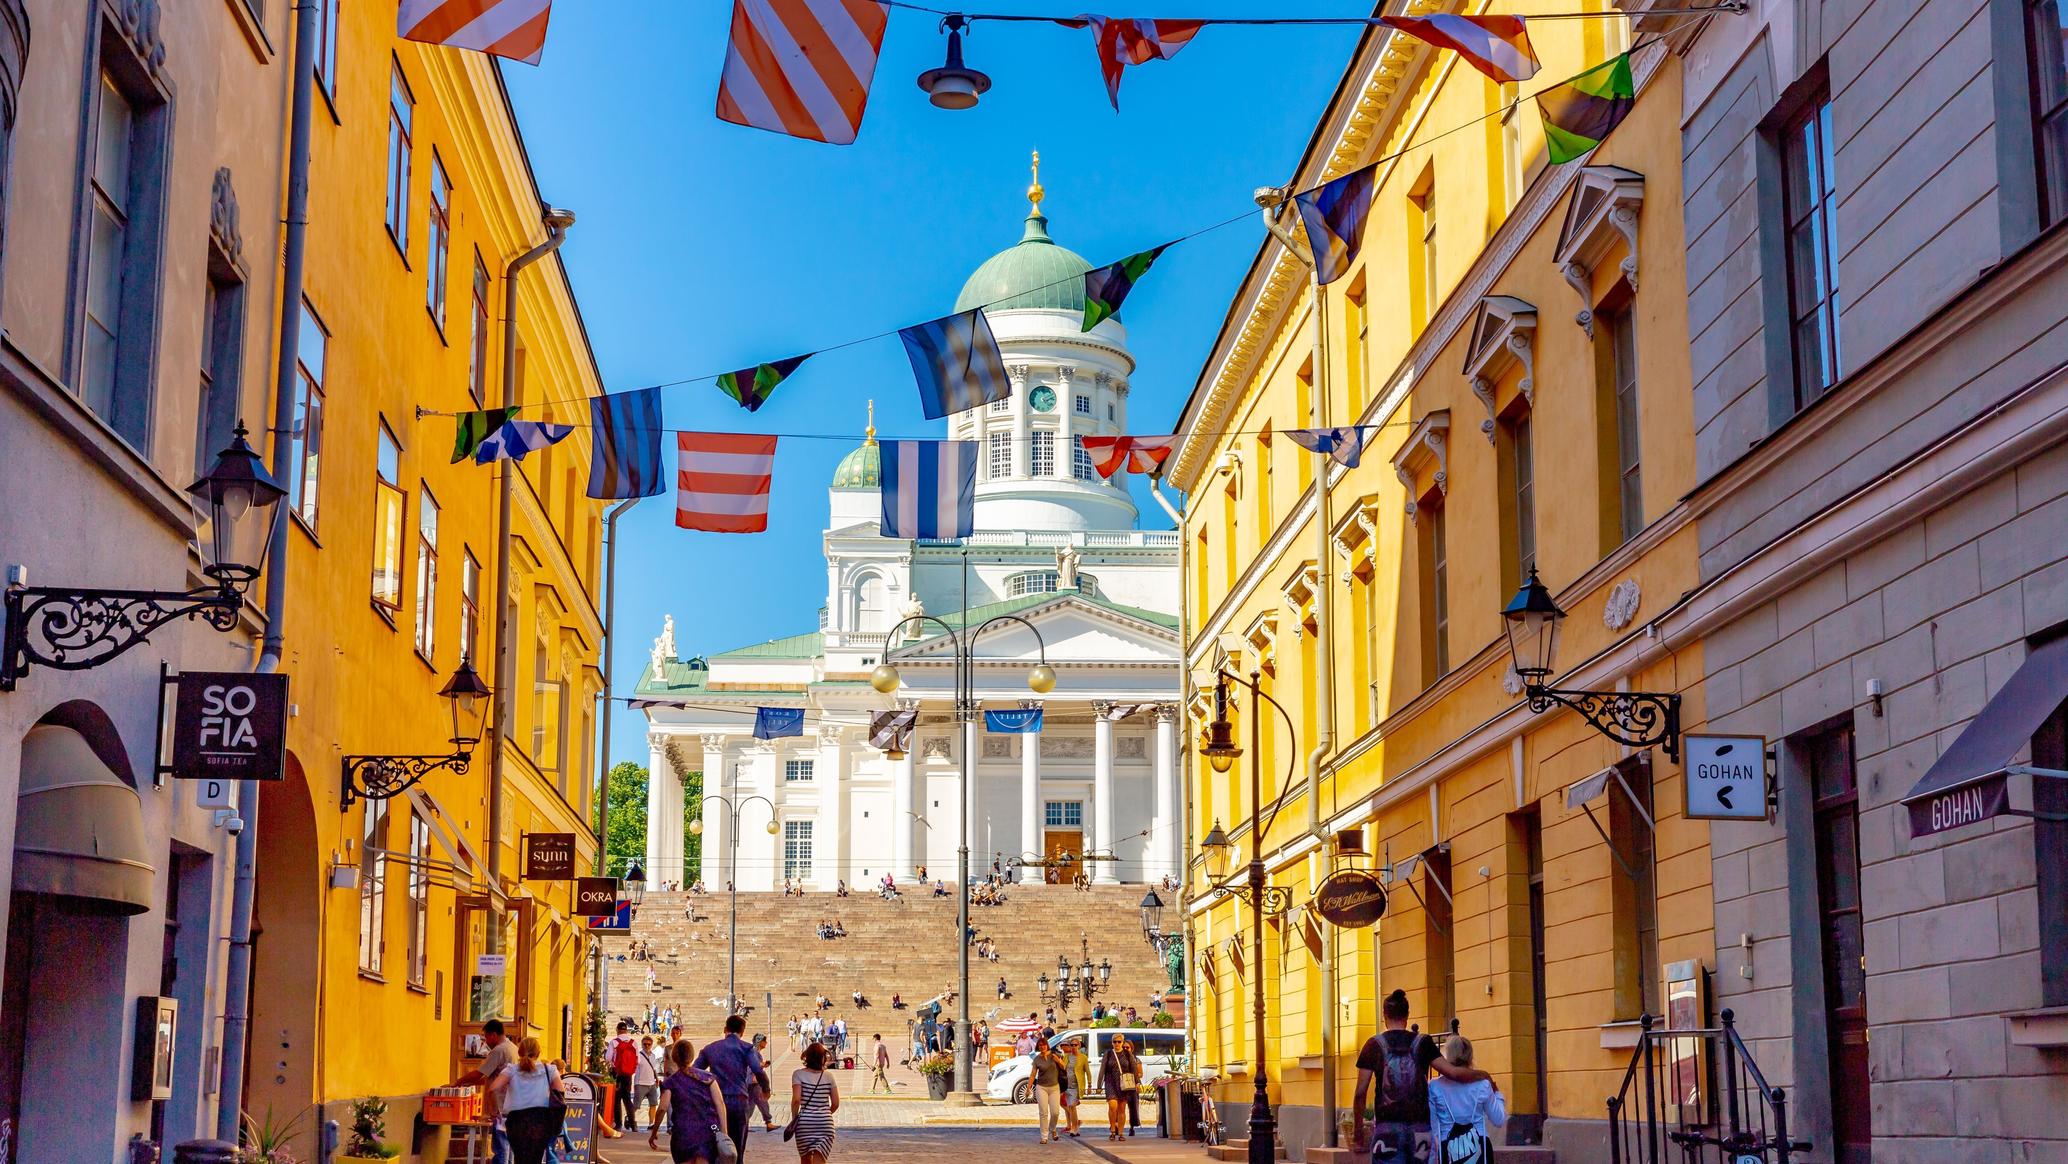 Helsinki se ubica en una península del golfo de Finlandia. Su avenida central, Mannerheimintie, está bordeada de instituciones como el Museo Nacional, que recorre la historia de Finlandia desde la Edad de Piedra hasta la actualidad.